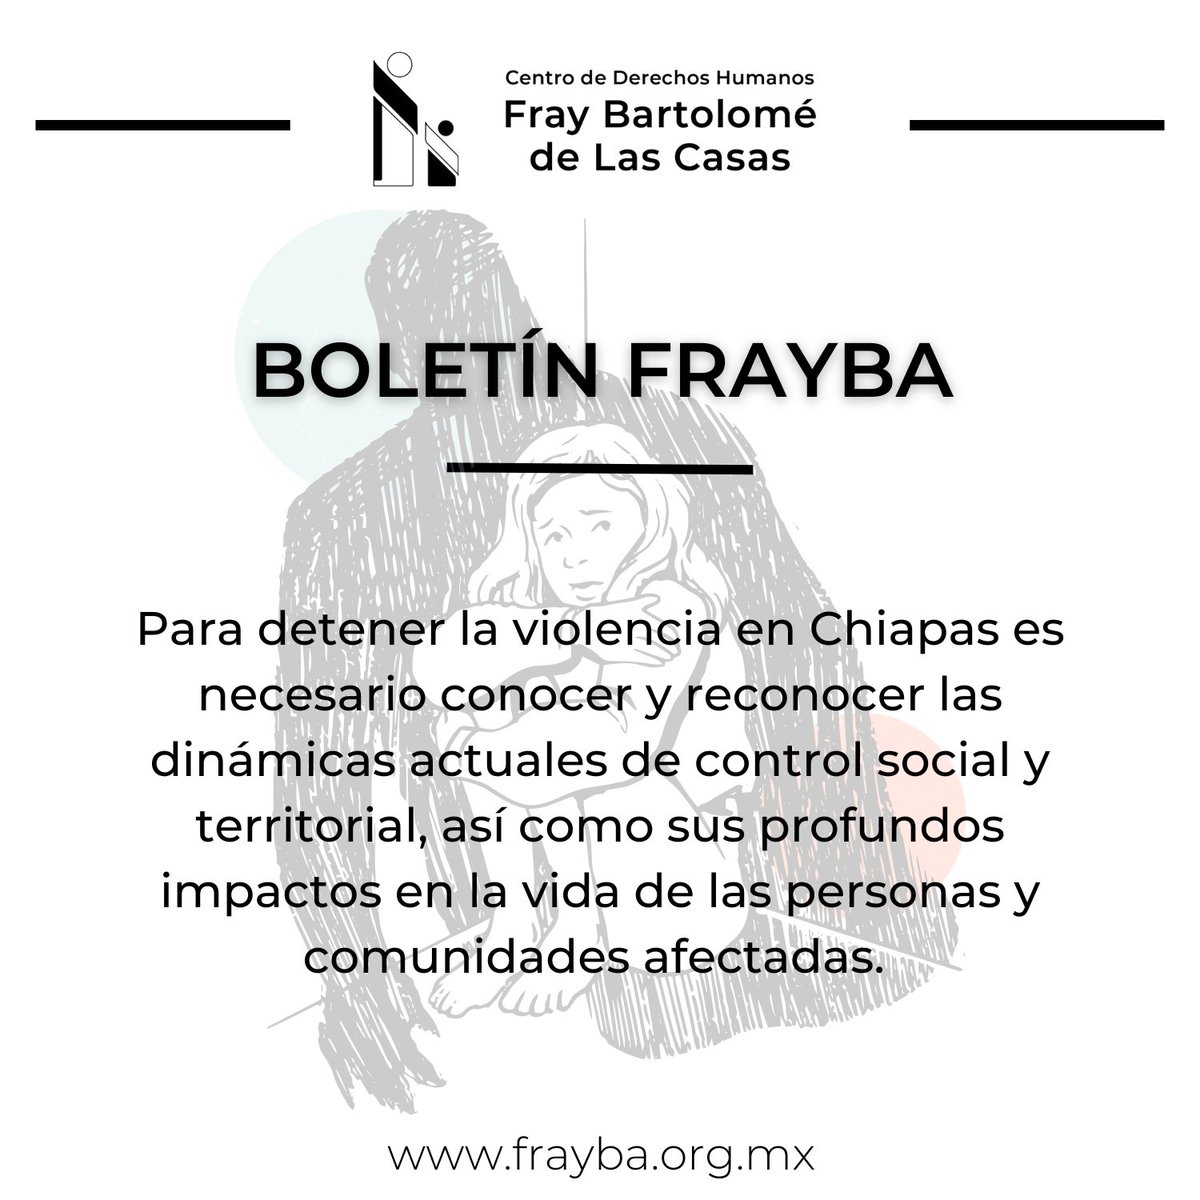 ‼️La violencia en contra de la población civil en Chiapas tiene como propósito el control social y es uno de los principales pilares de la estrategia de guerra de los grupos de la Delincuencia Organizada. 🔵𝗕𝗼𝗹𝗲𝘁𝗶́𝗻 𝗙𝗿𝗮𝘆𝗯𝗮 📲 frayba.org.mx/boletin-12-con…